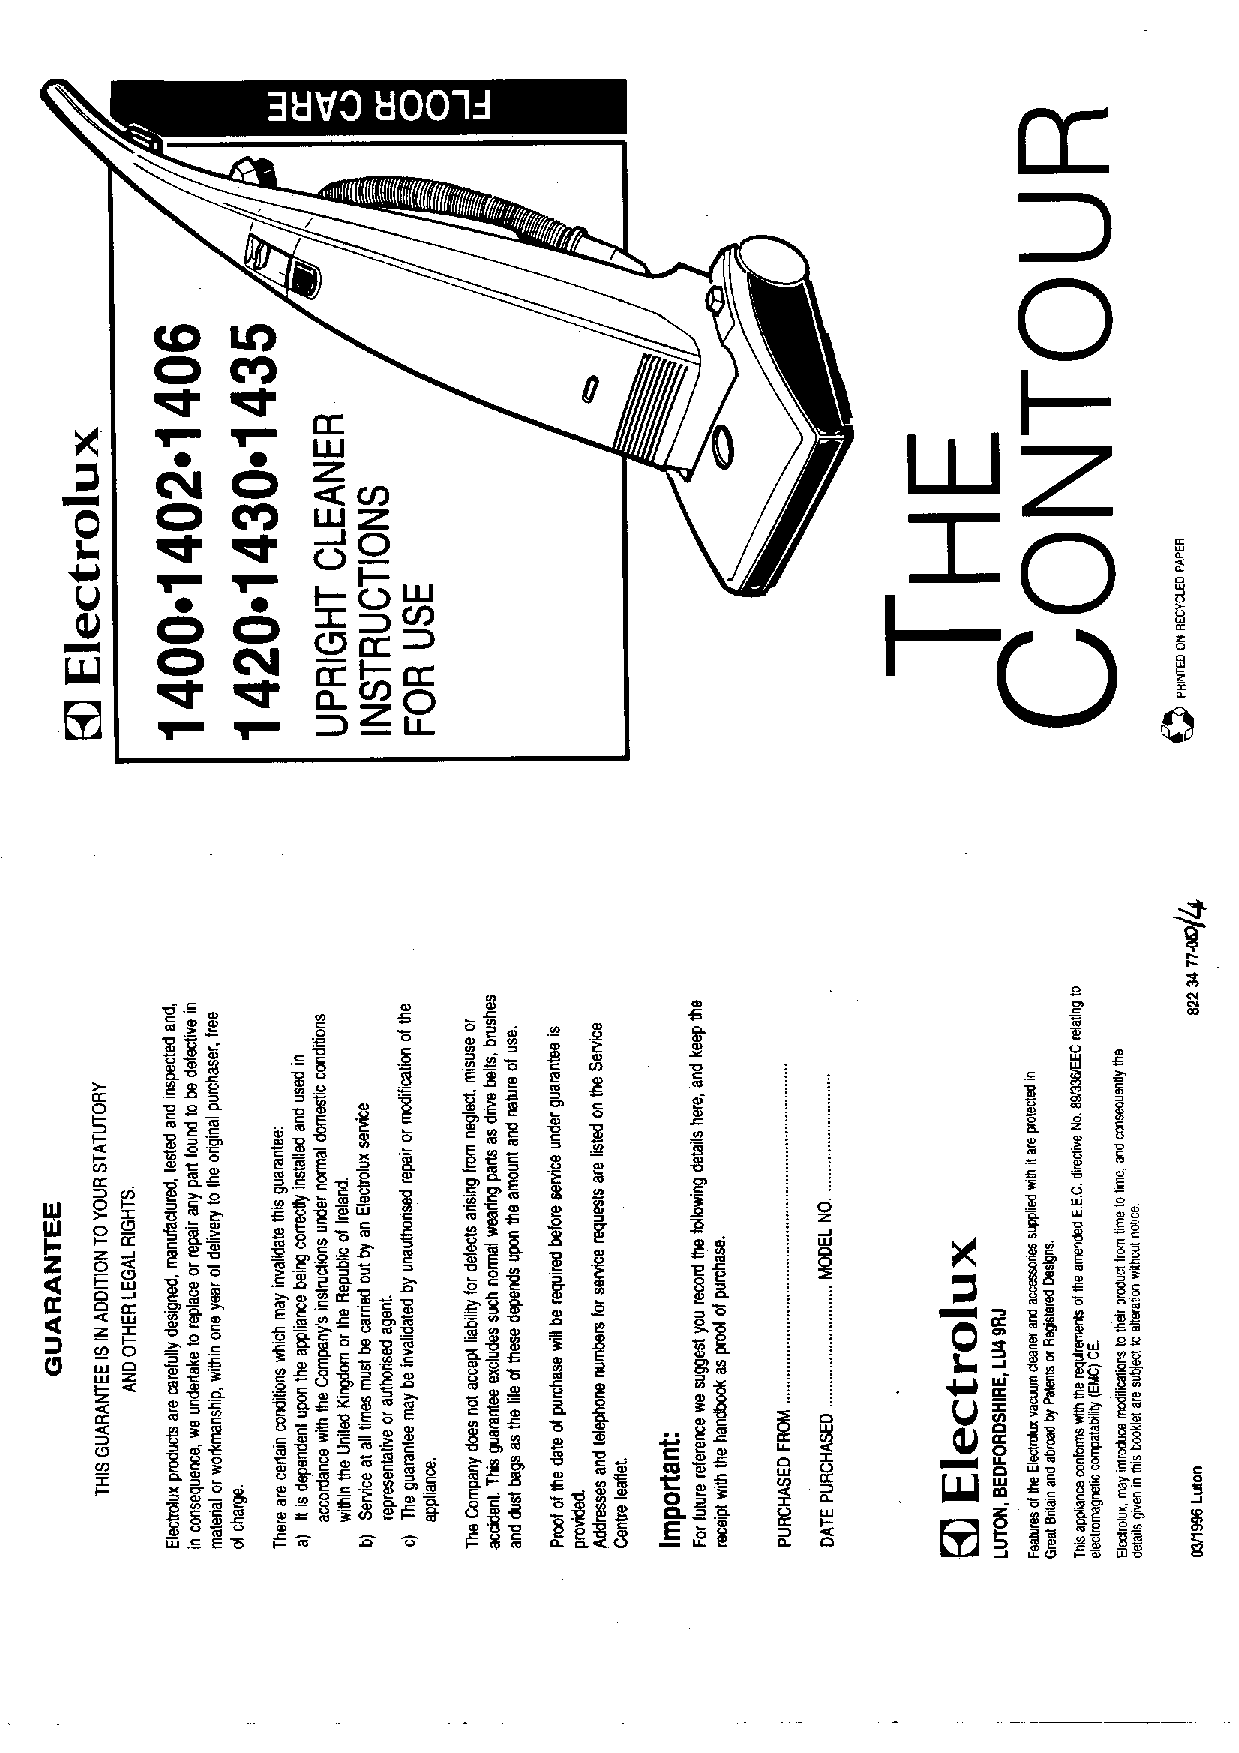 AEG-Electrolux Z1402, Z1406N, Z1420, Z1400, Z1435 User Manual